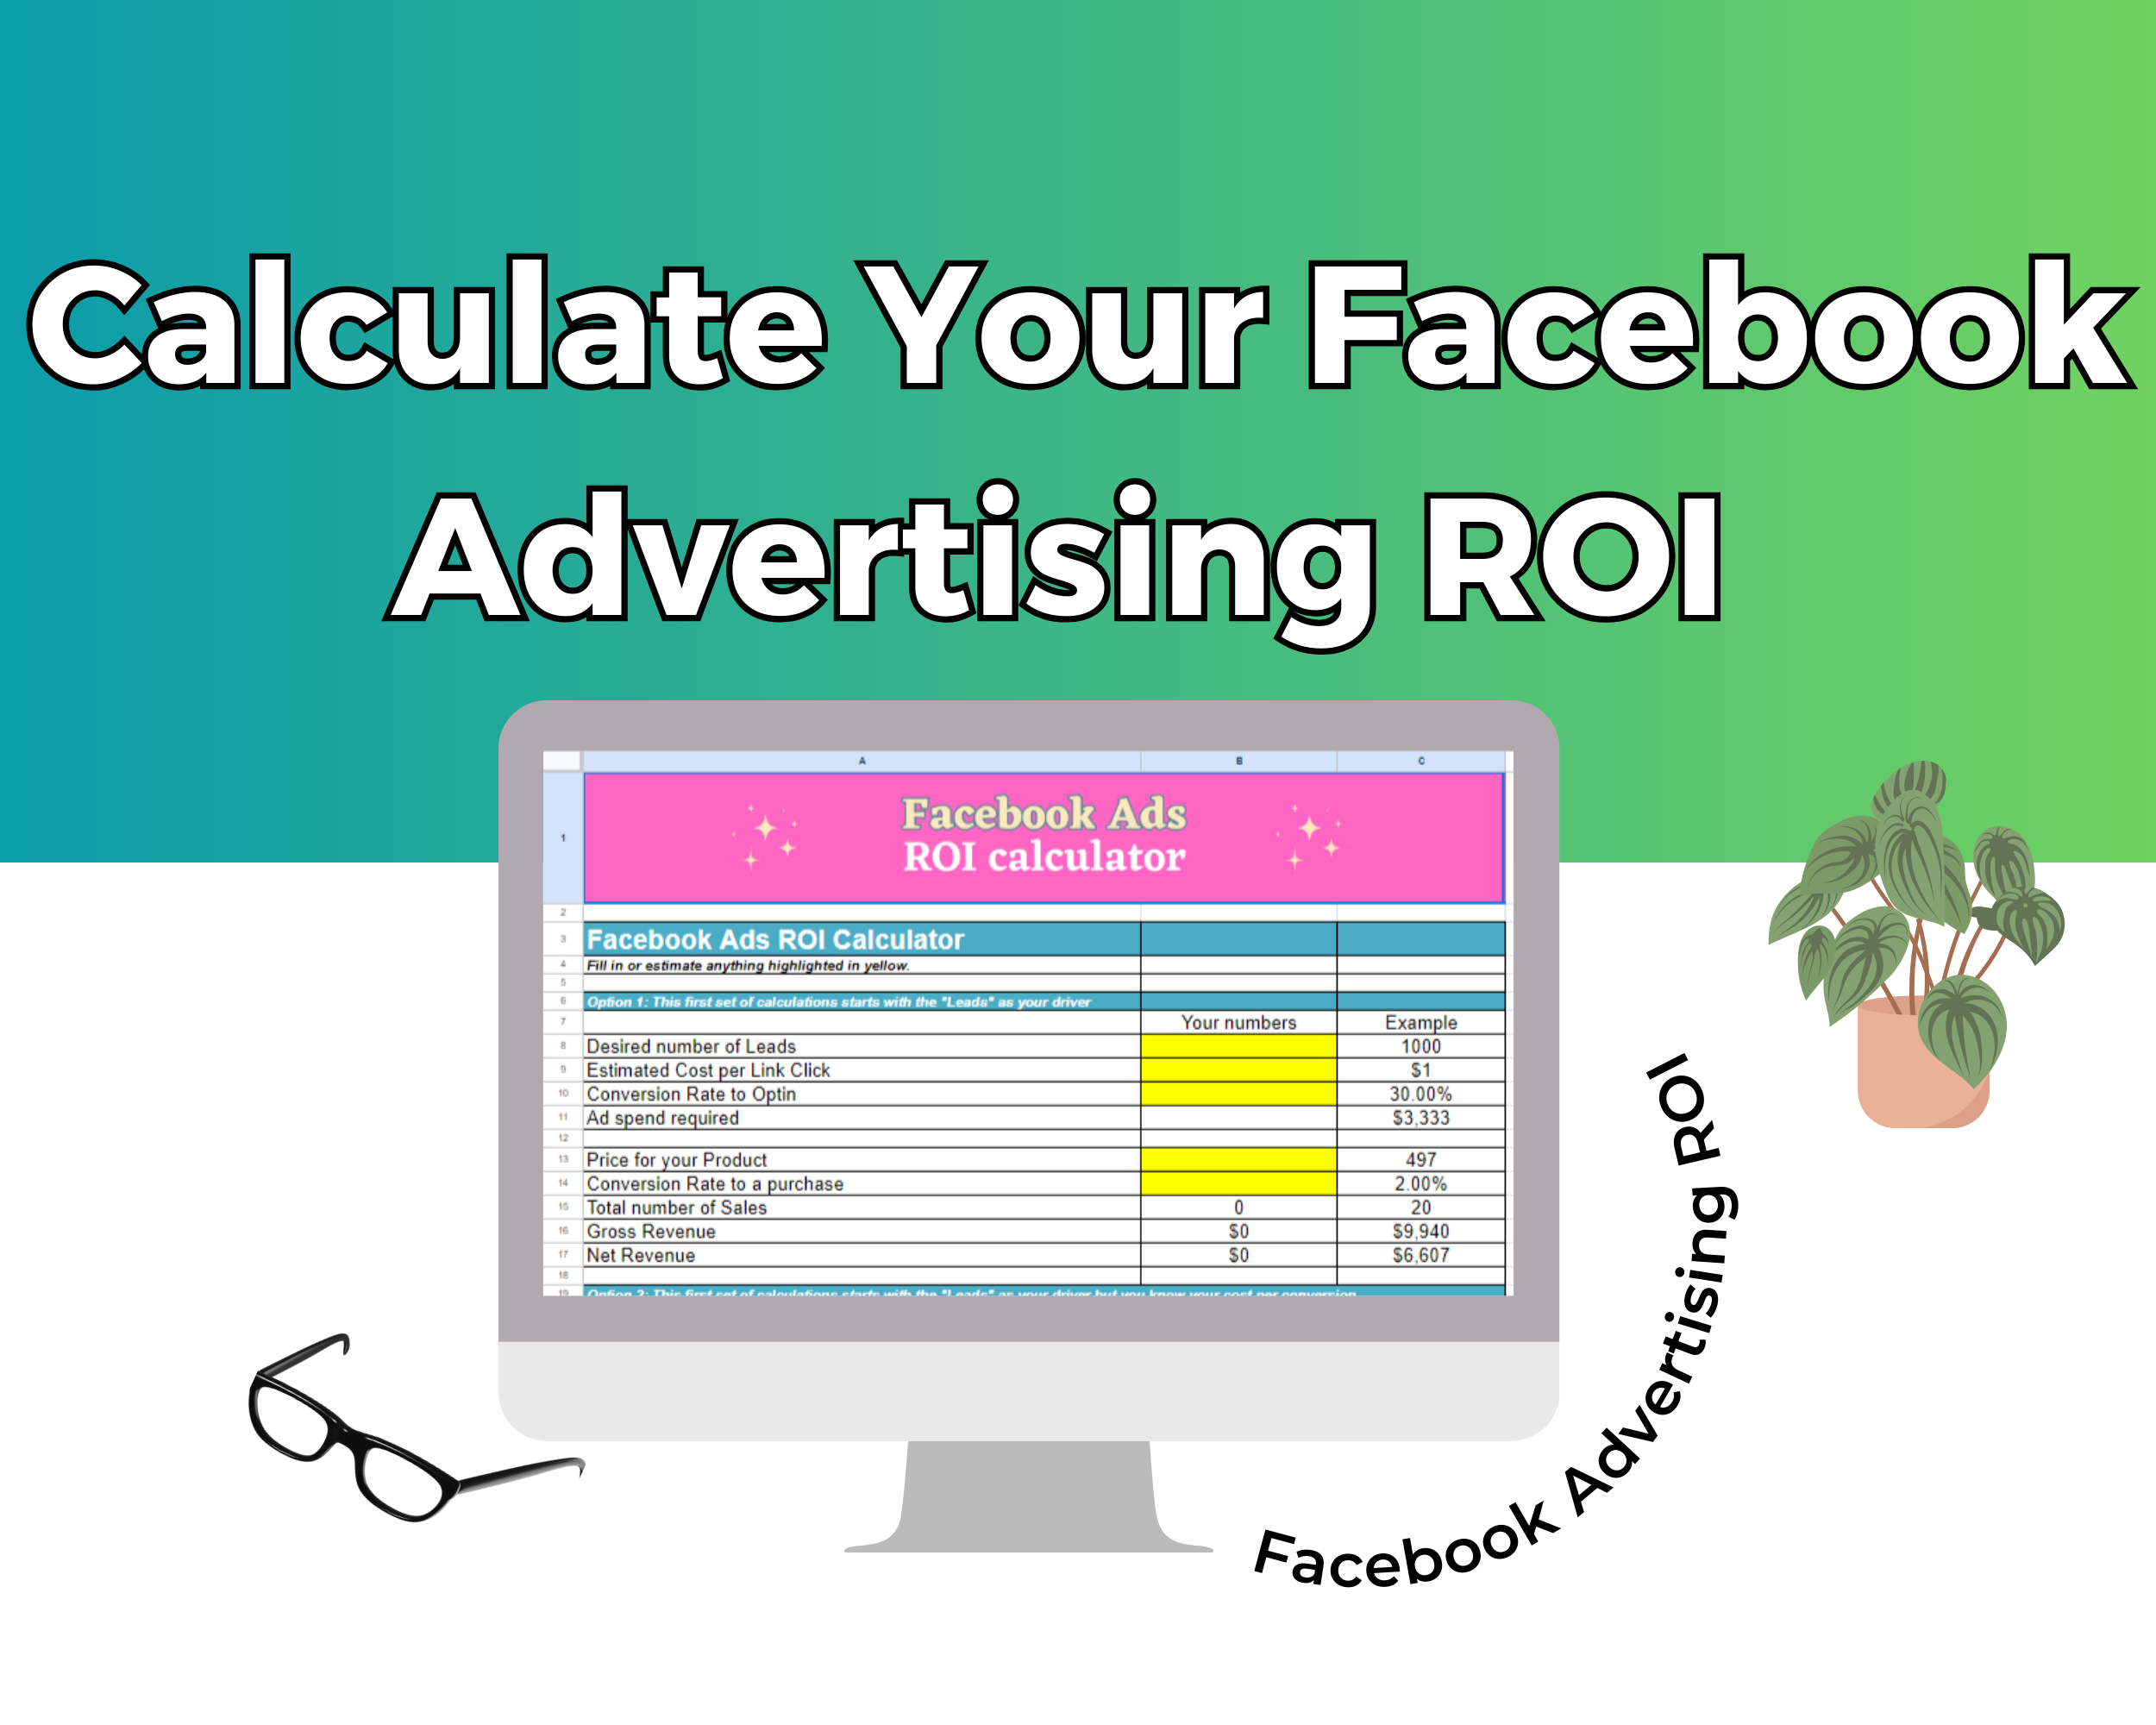 Facebook Advertising ROI Calculator  Google Spreadsheet | Simple Facebook Advertising ROI Calculator  Google Sheets